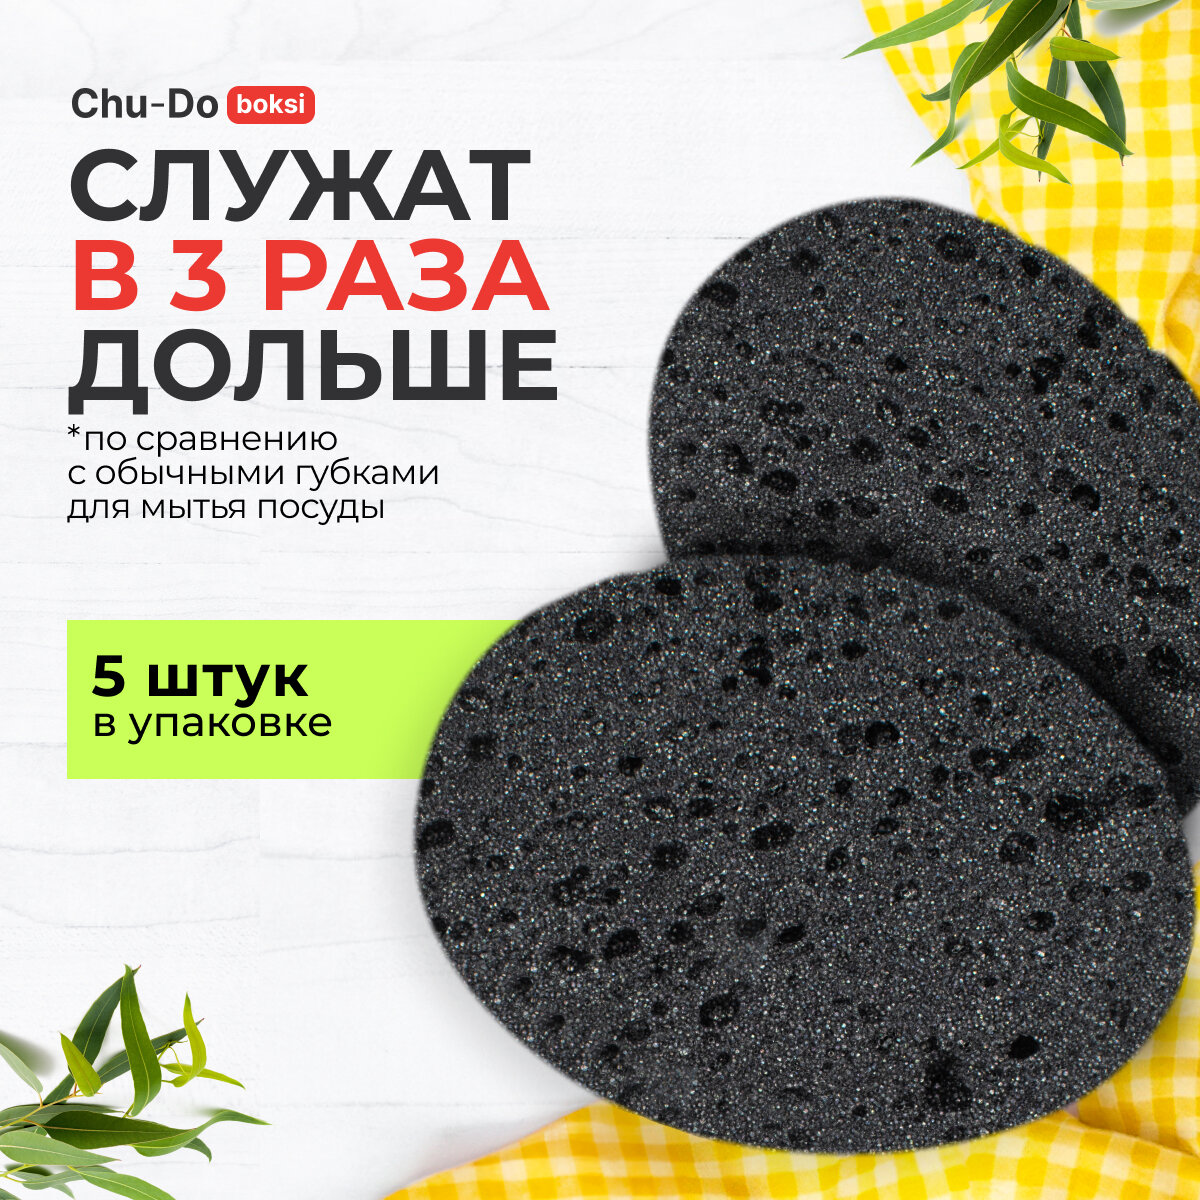 Губки для мытья посуды черные, кухонные, овальные 5 шт. в наборе Chu-Do boksi